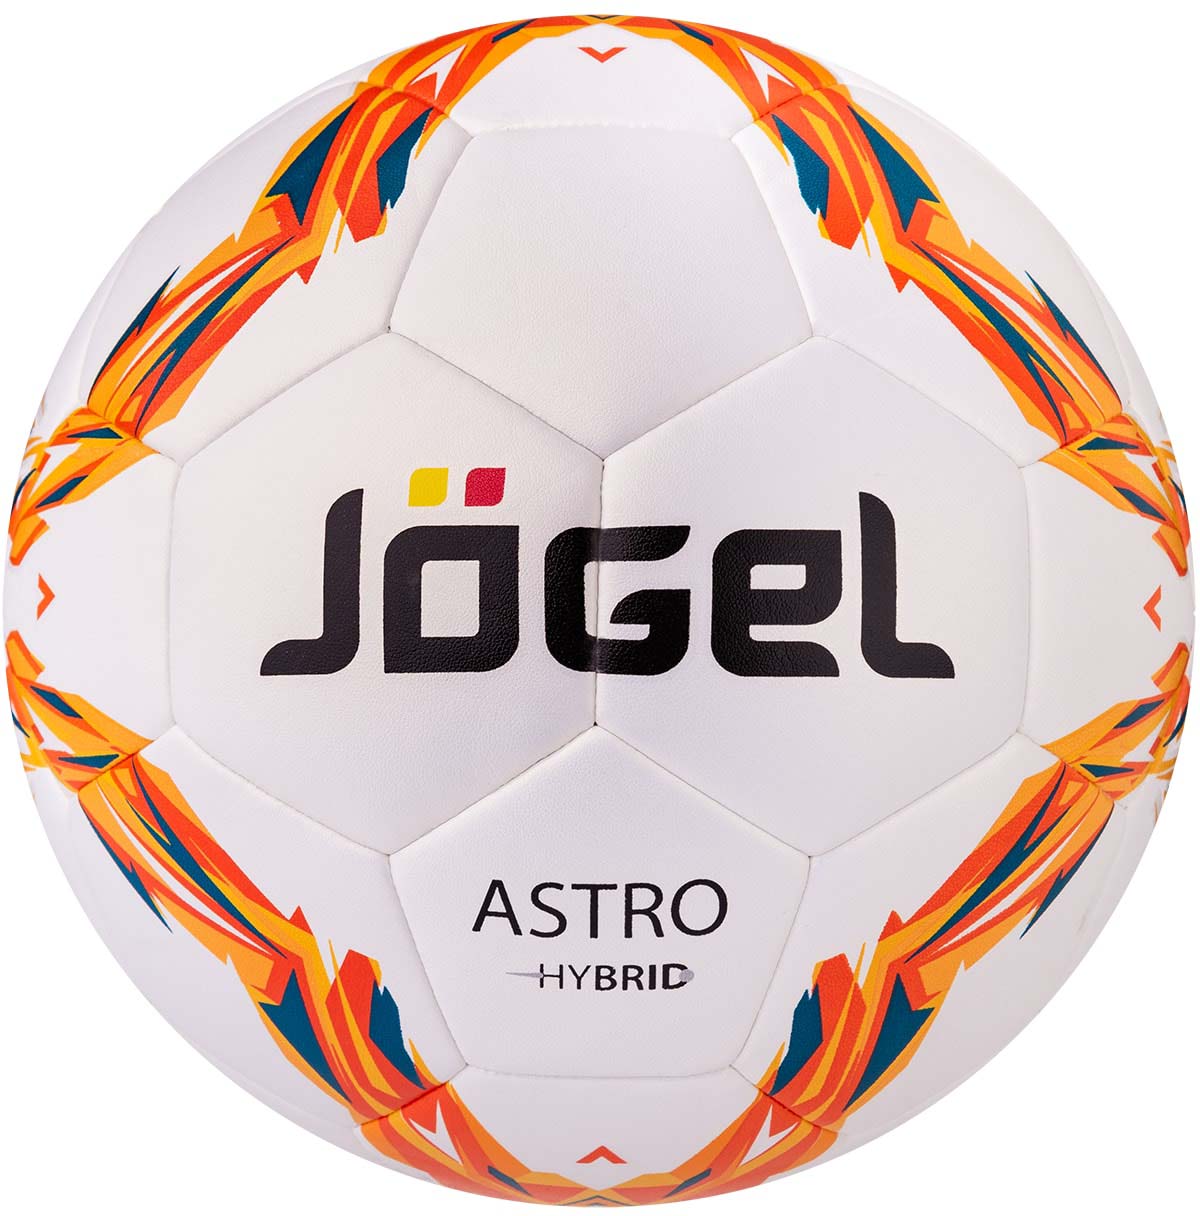 Мяч футбольный Jogel "Astro", цвет: оранжевый, желтый, красный, черный. Размер 5. JS-760